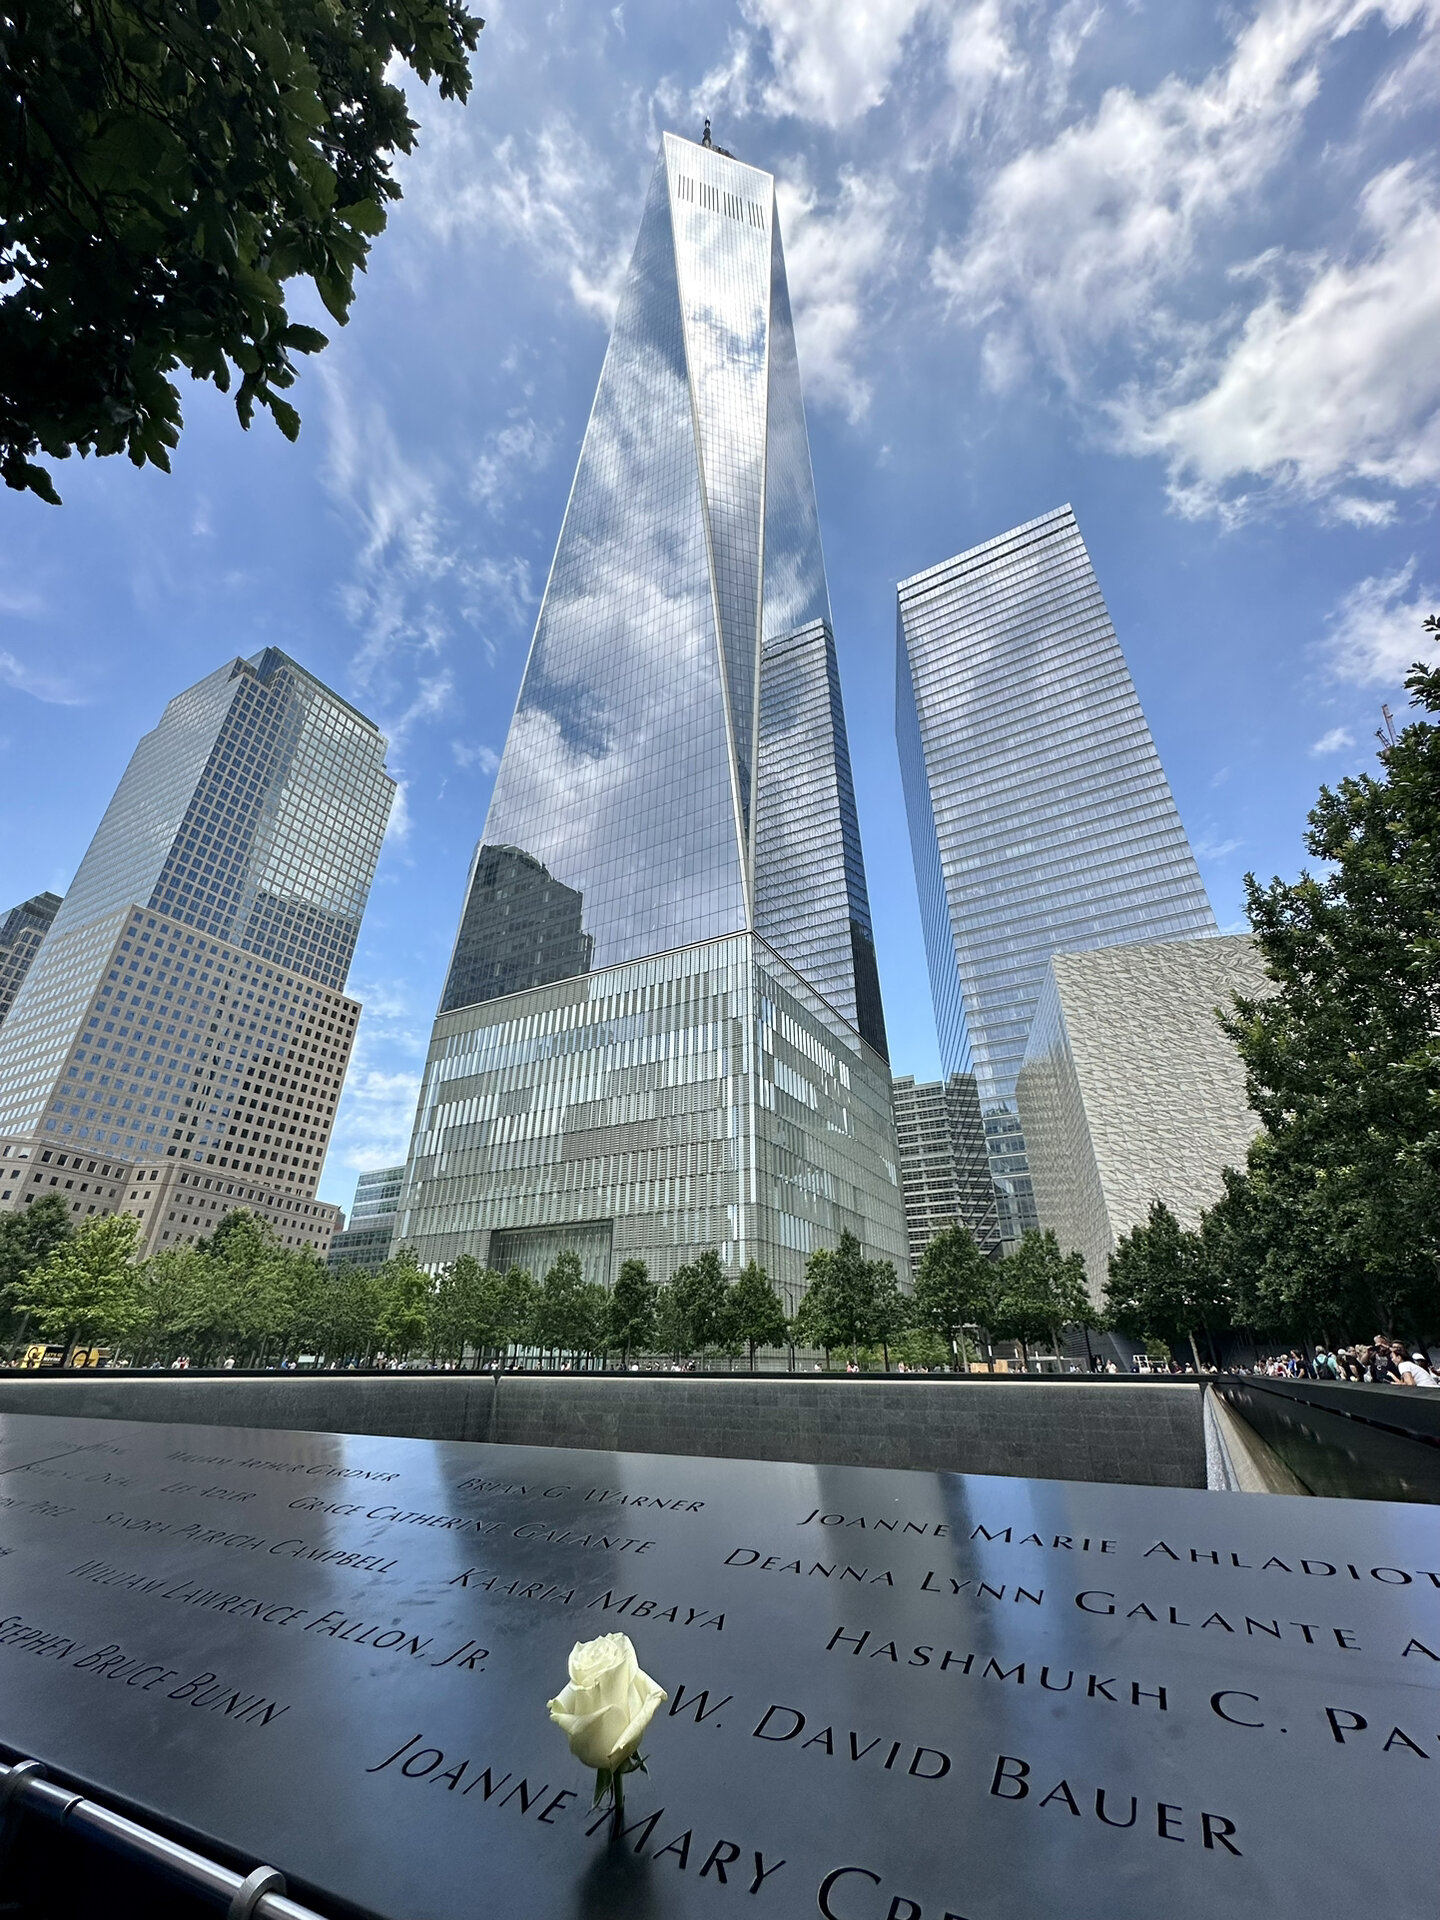 纽约世贸中心911图片